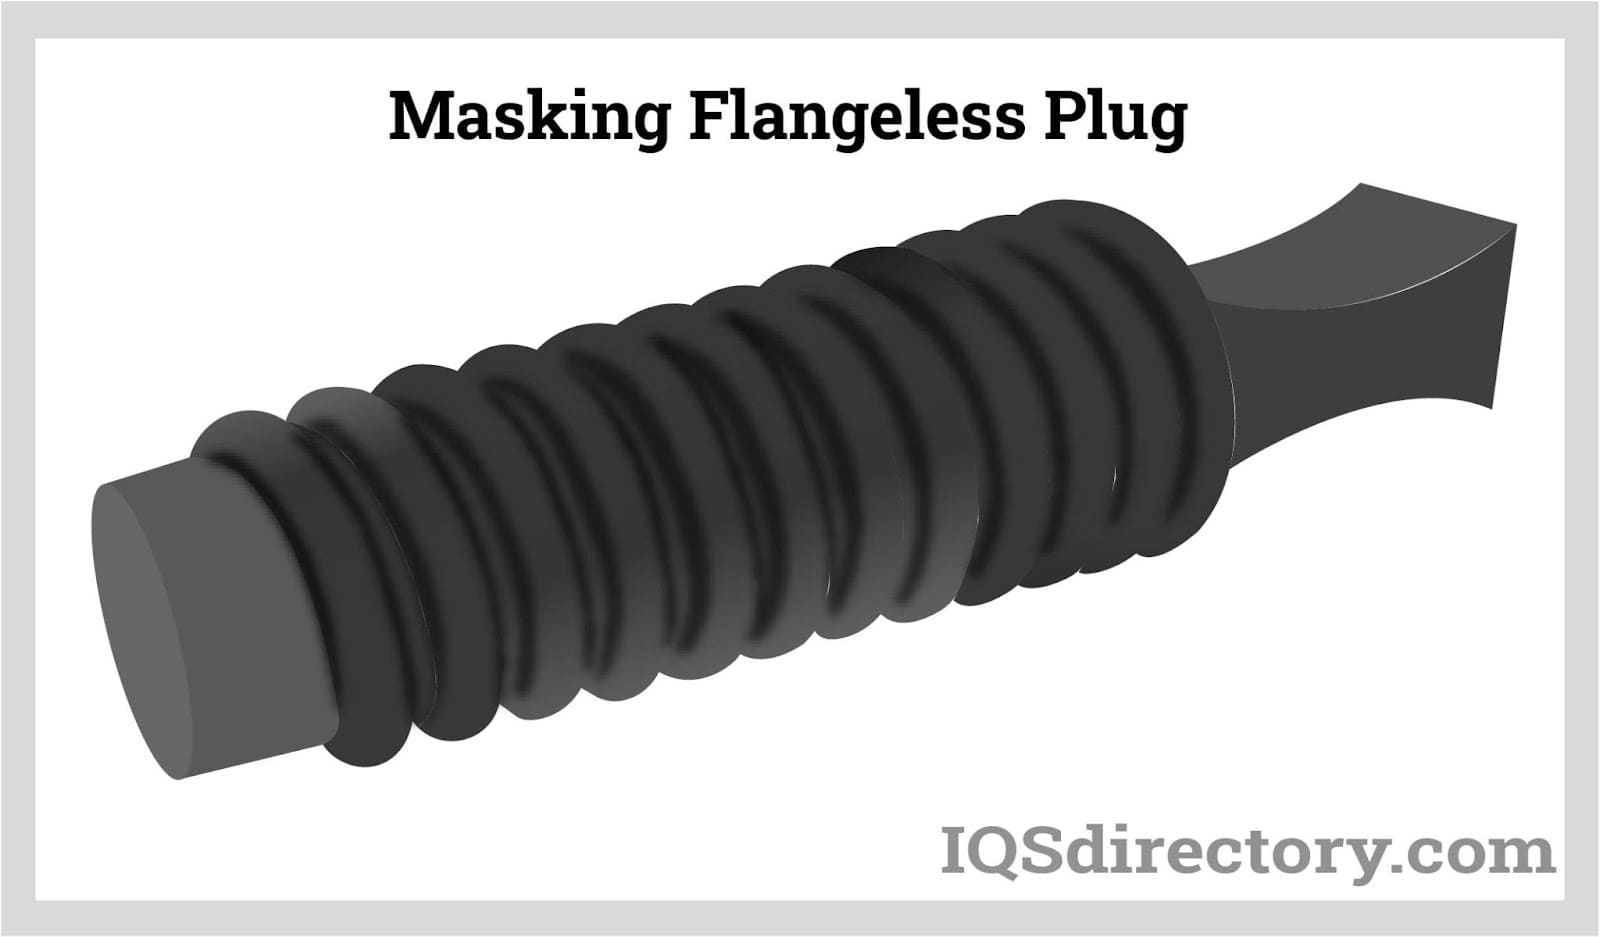 Masking Flangeless Plug